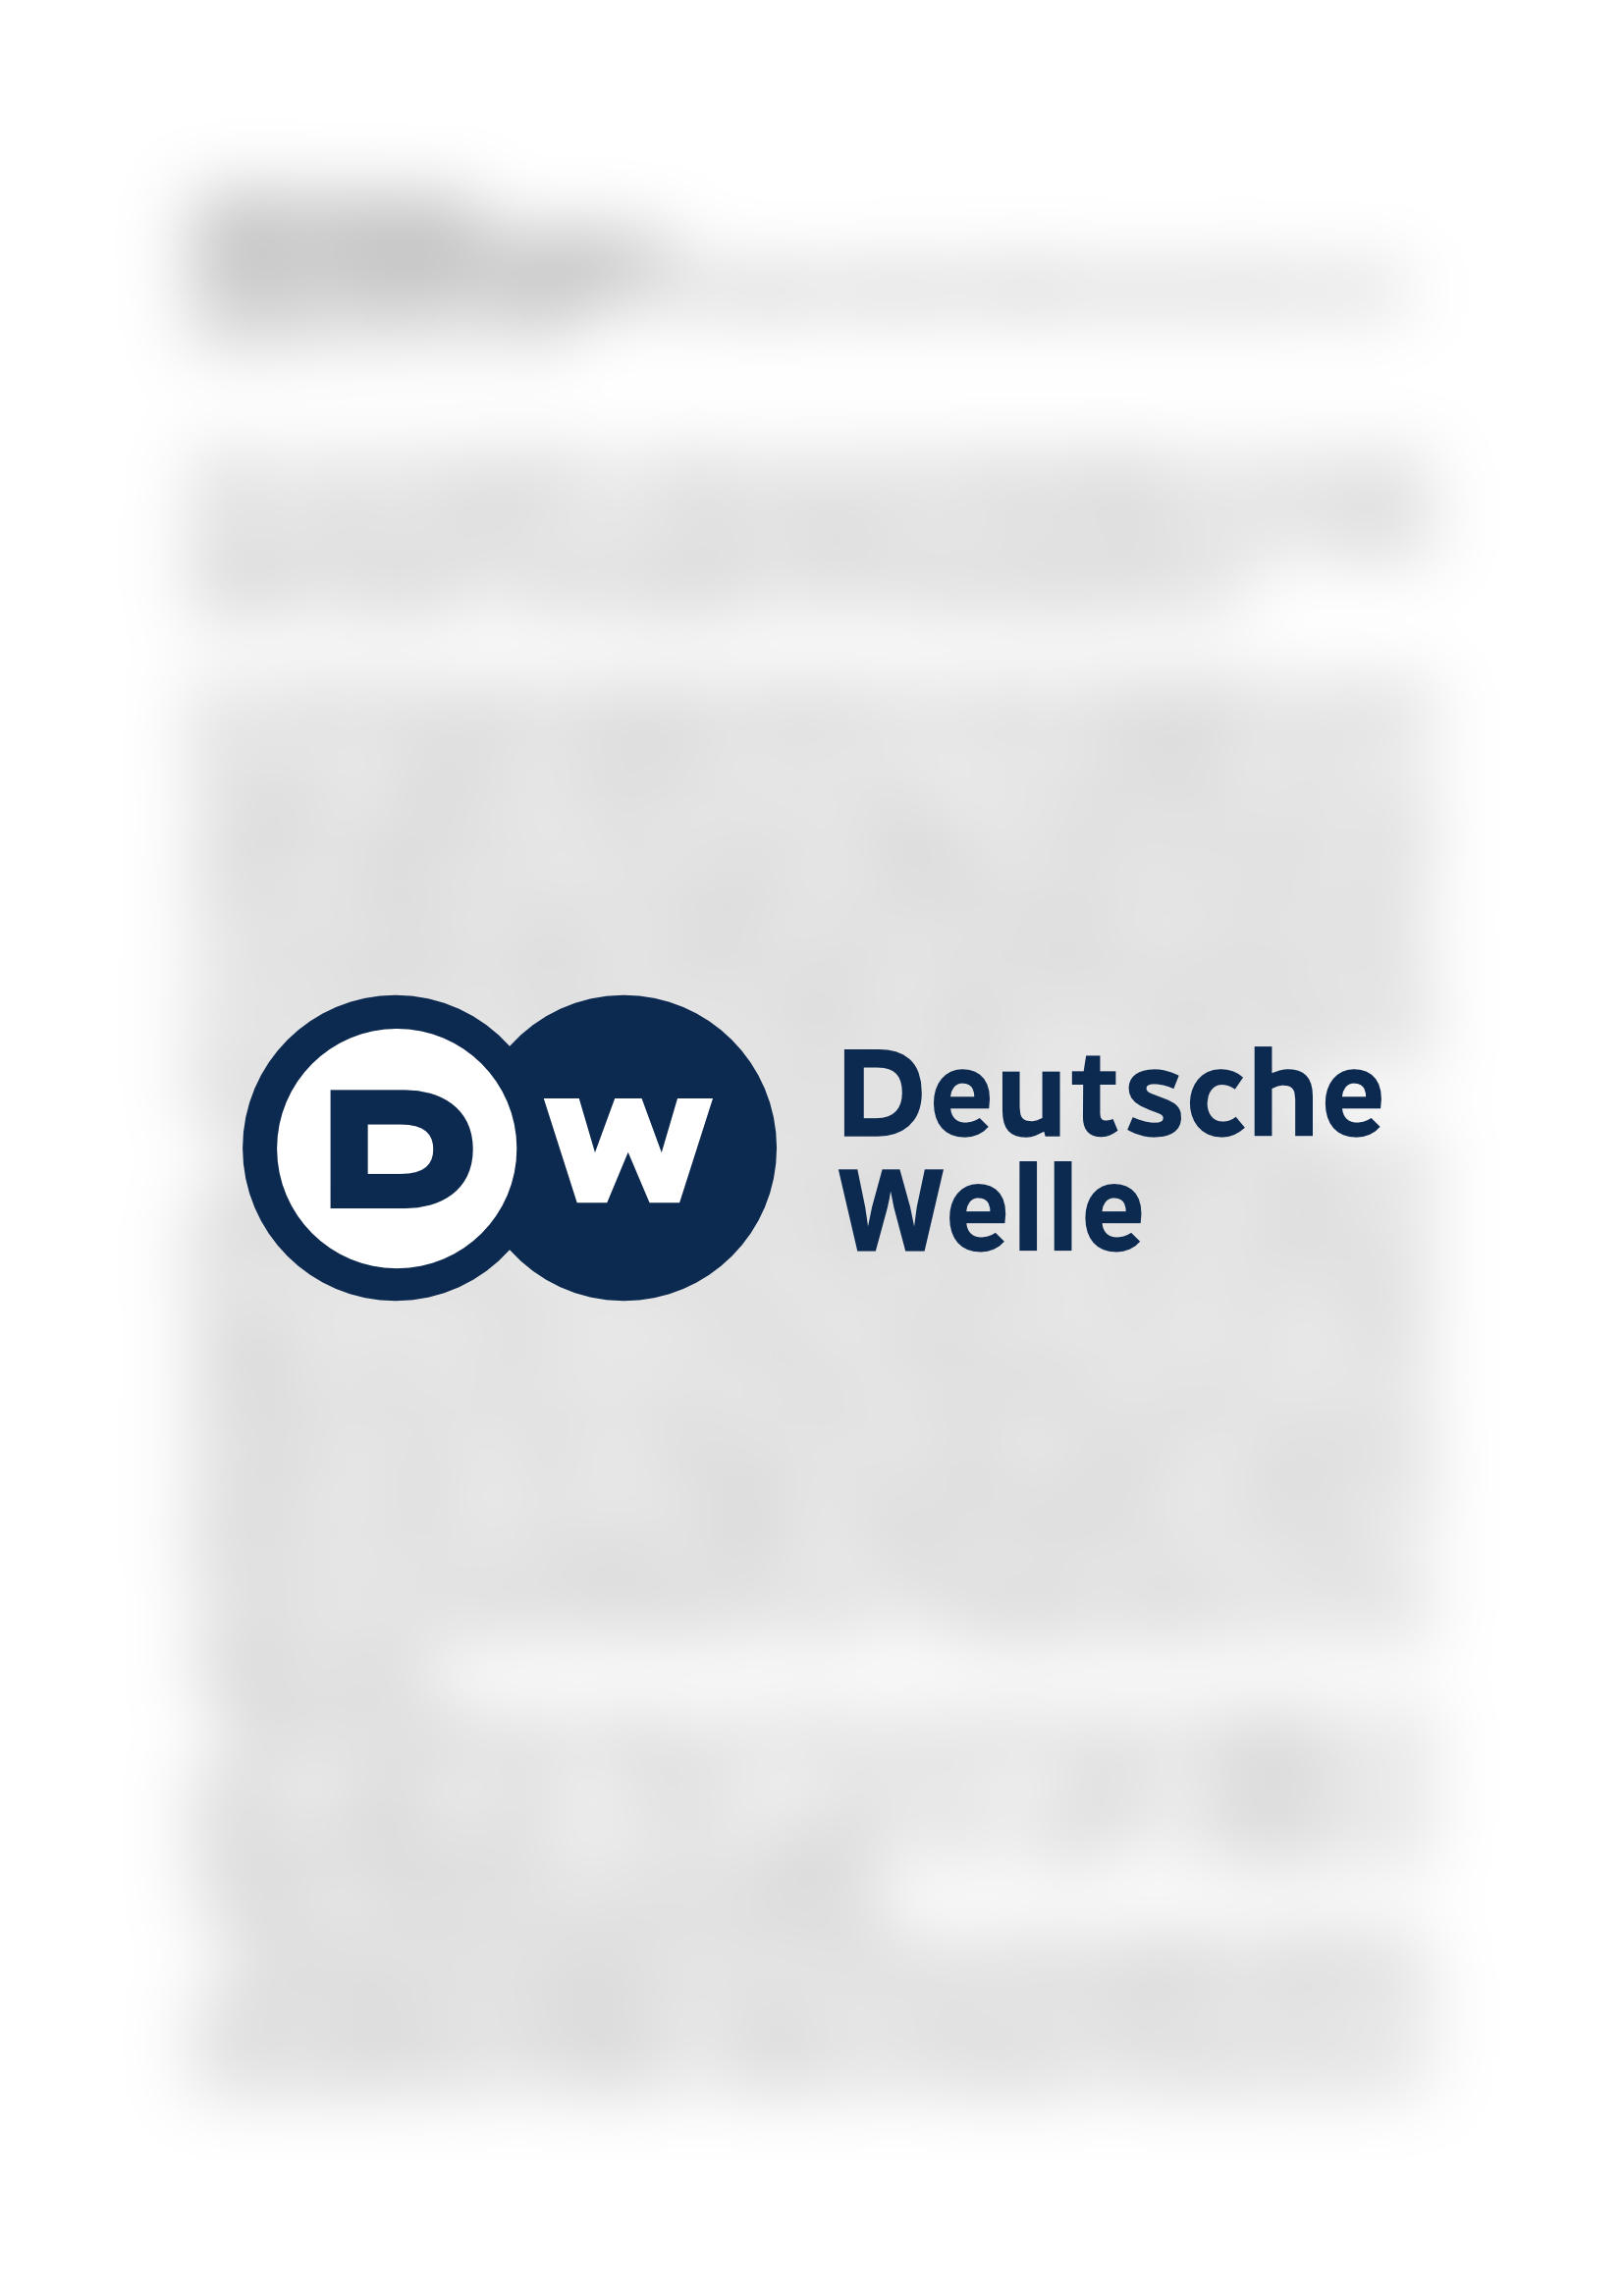 Vorschau - Deutsche Welle